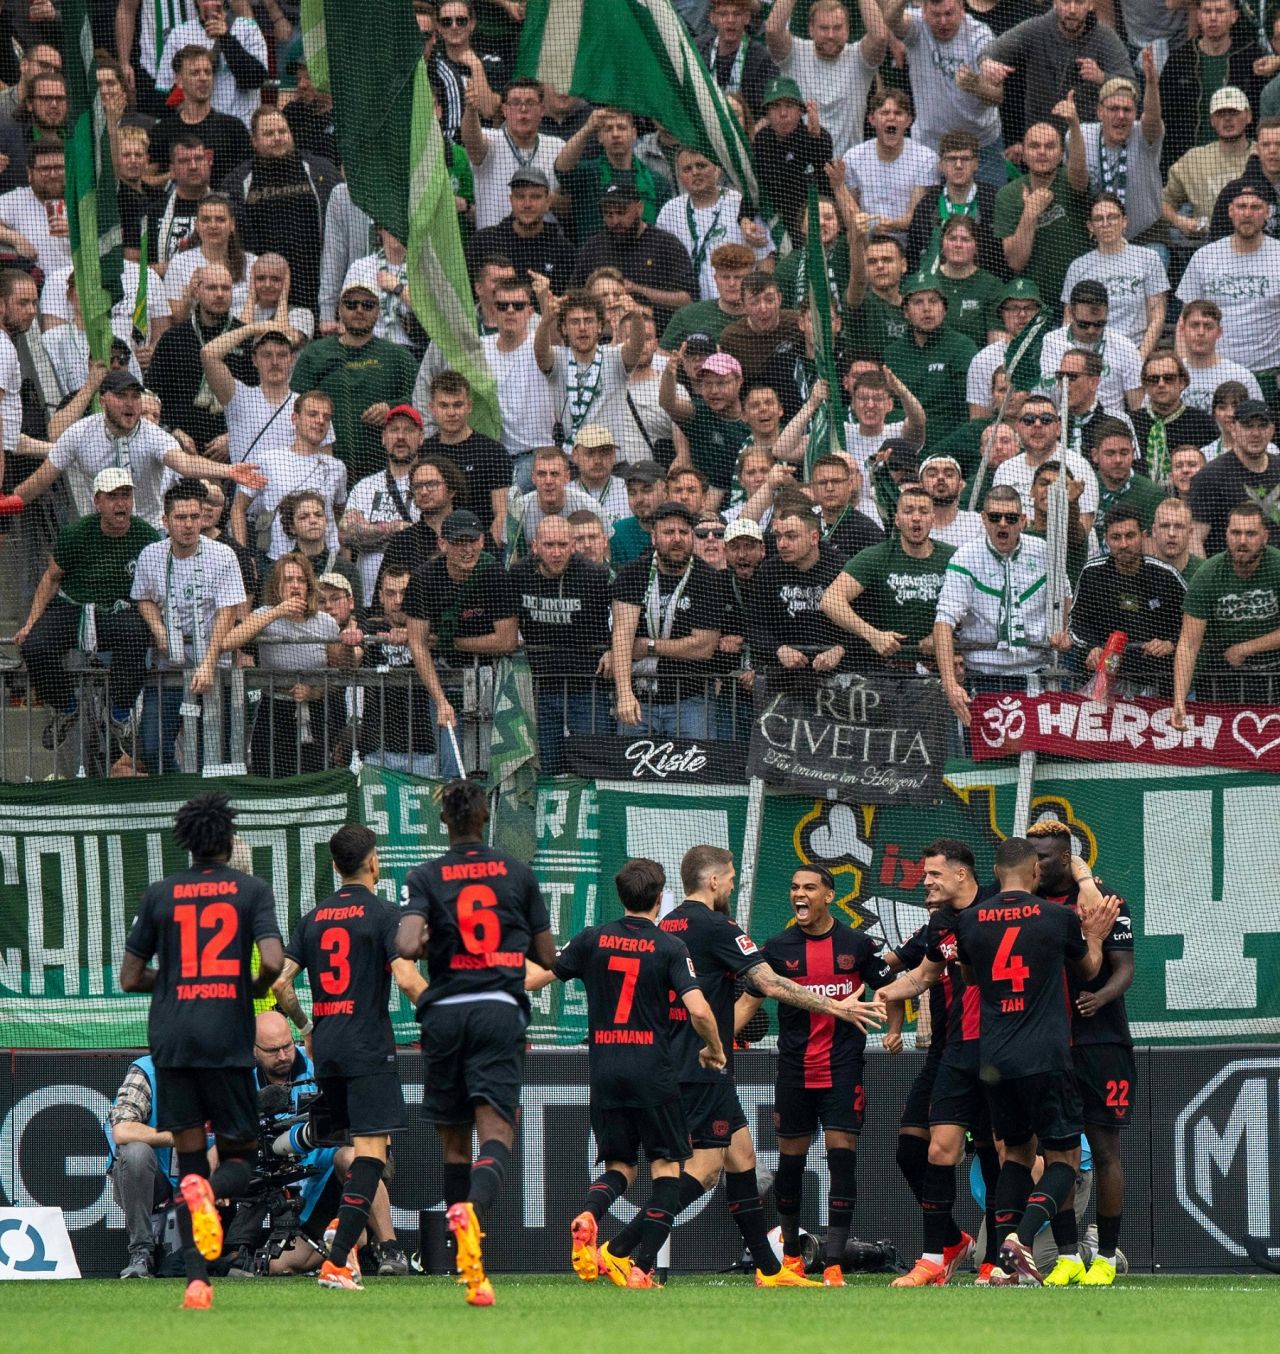 Imaginile bucuriei! Bayer Leverkusen, campioană pentru prima dată în istorie! Fanii au luat cu asalt arena_17